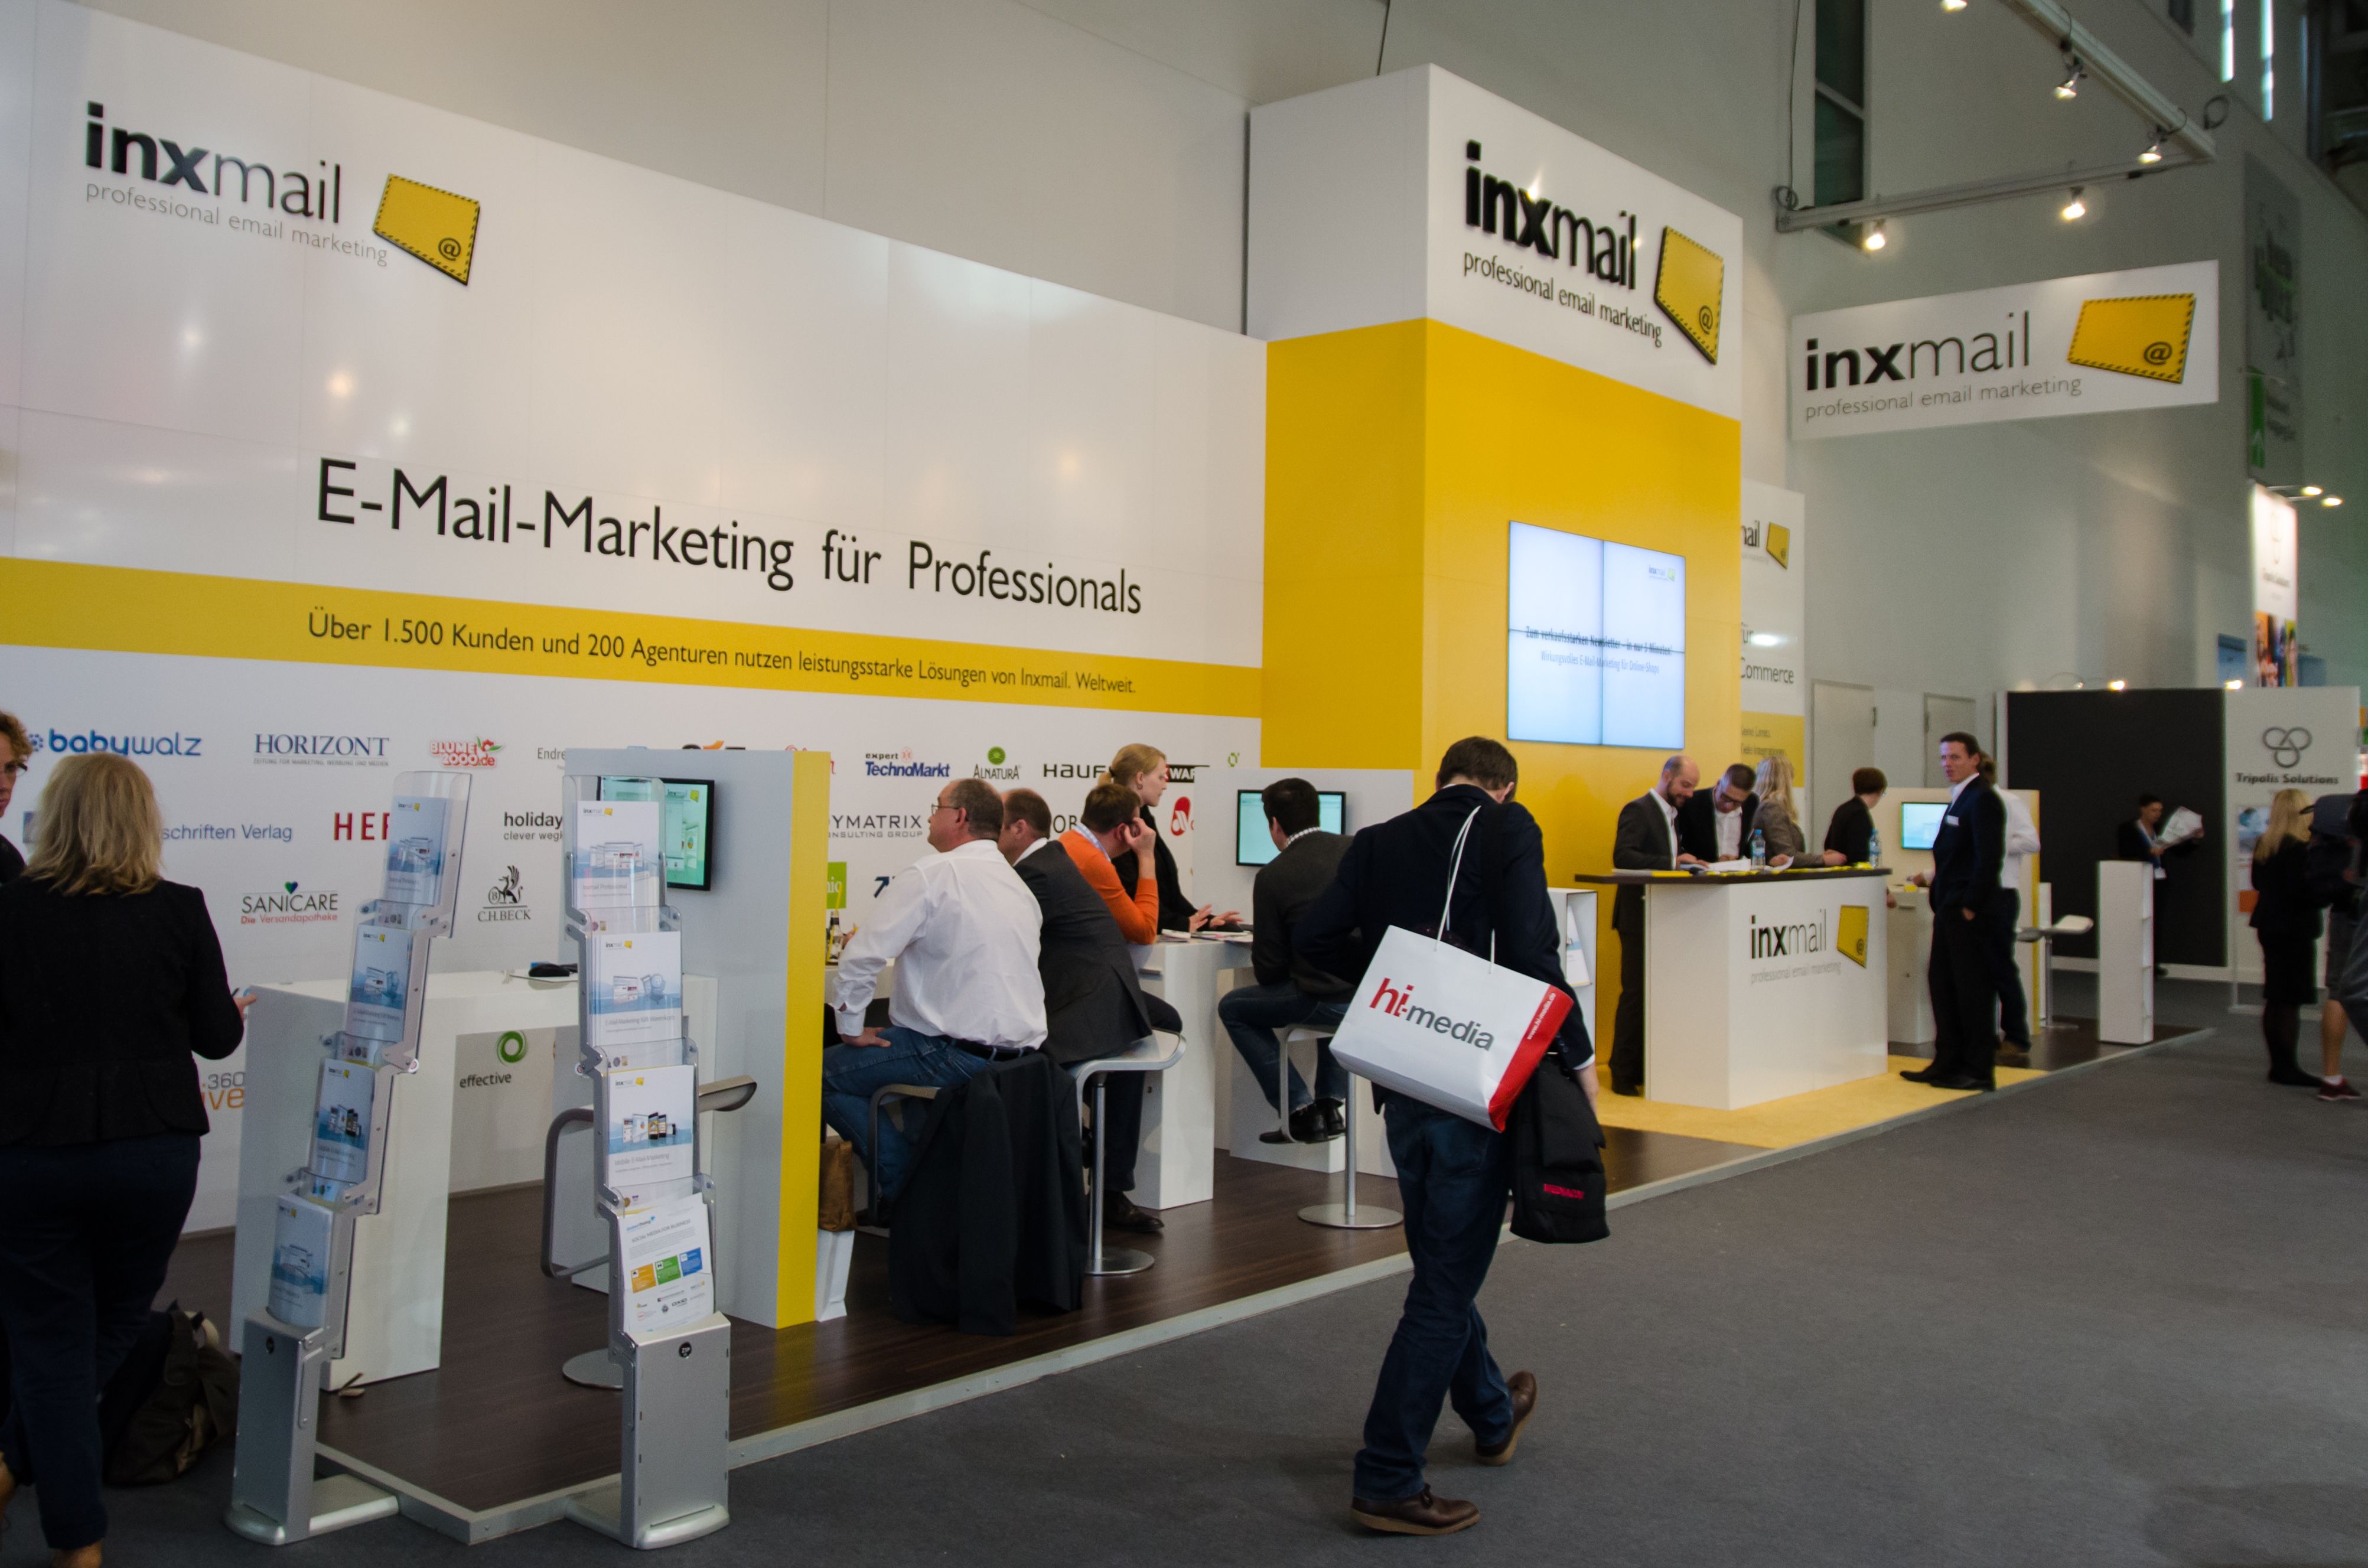 „Unser Hauptthema auf der dmexco 2014 wird ‚Connected E-Mail-Marketing‘ sein“ – Martin Bucher, Inxmail-Geschäftsführer